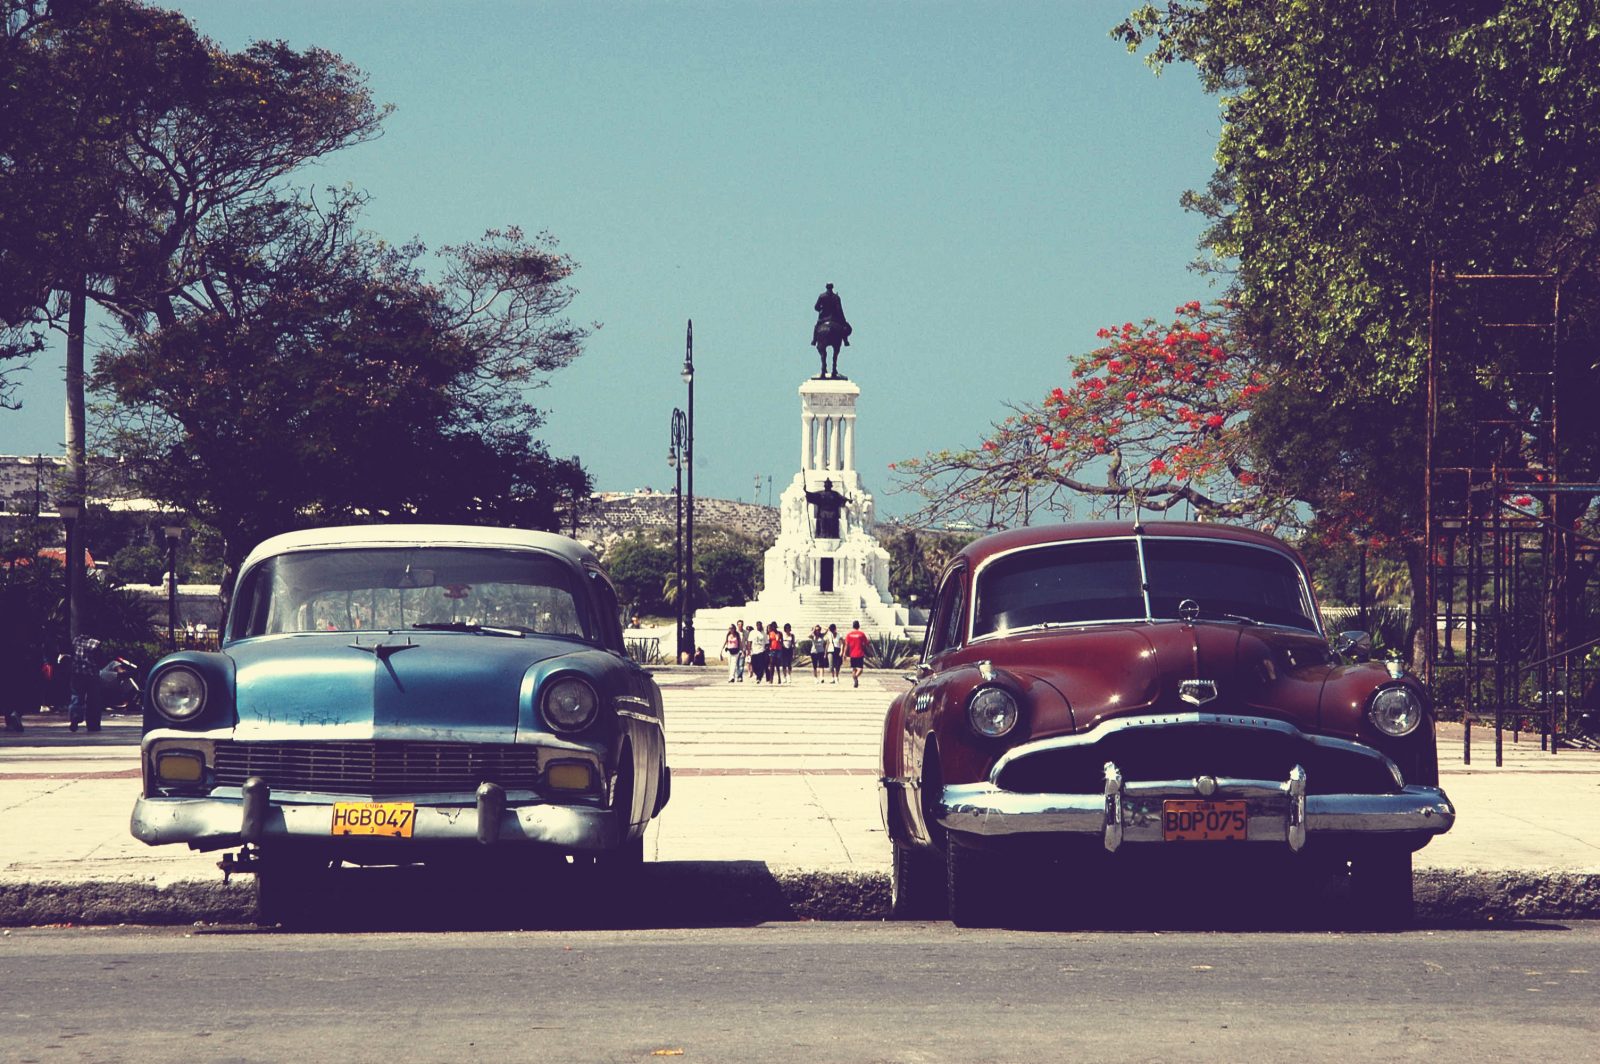 Two oldtimers in Havana, Cuba. Photo by Juriën Minke via Flickr CC